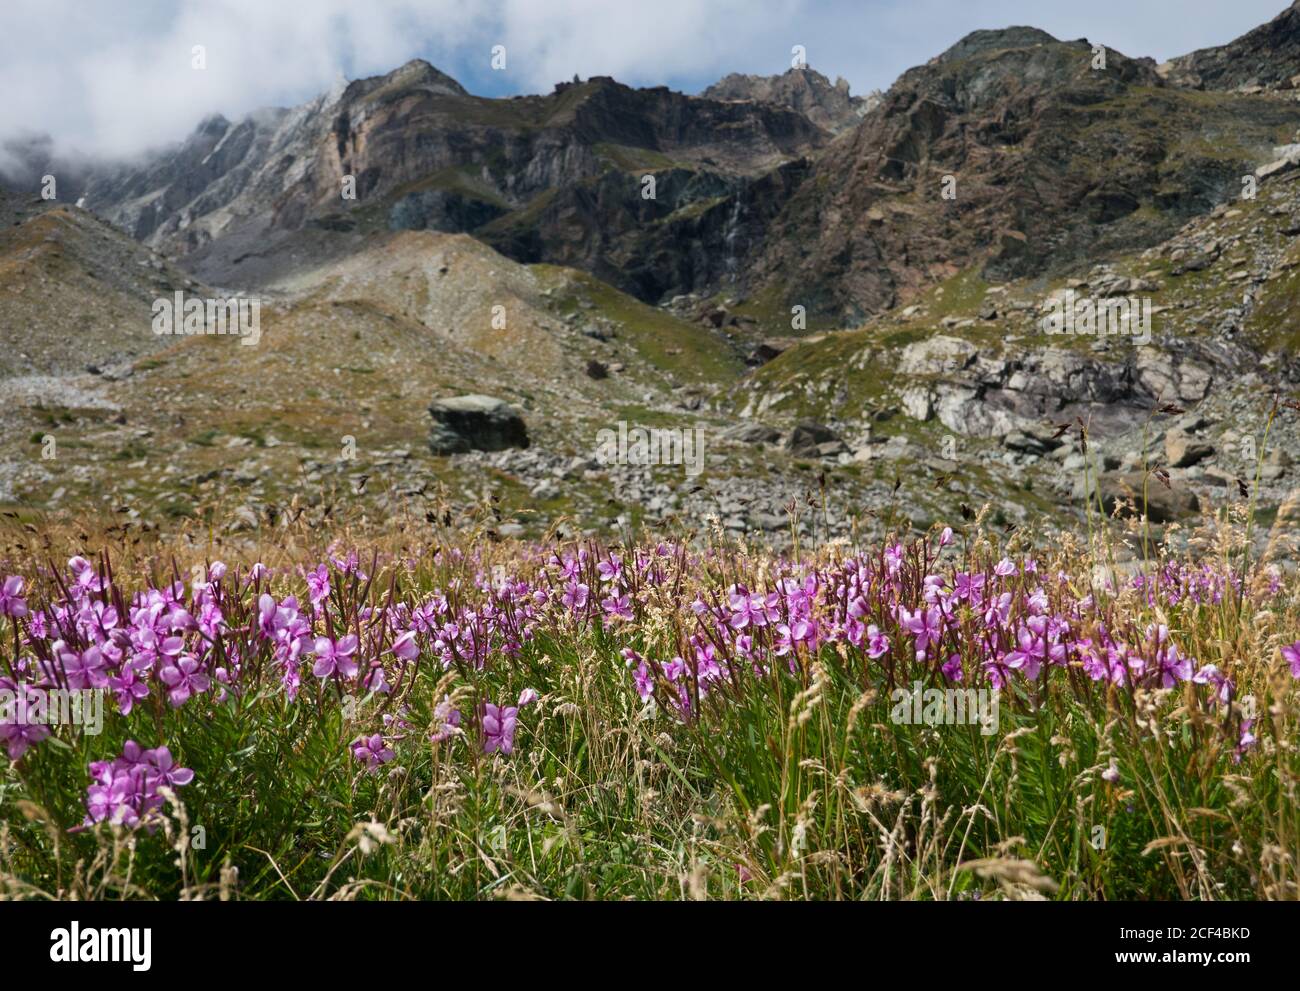 Rosa Blüten von alpinen Weidenkräutern, Chamaenerion fliescheri, in einer alpinen Landschaft, im Hintergrund die Moräne eines verschwundenen Gletschers Stockfoto